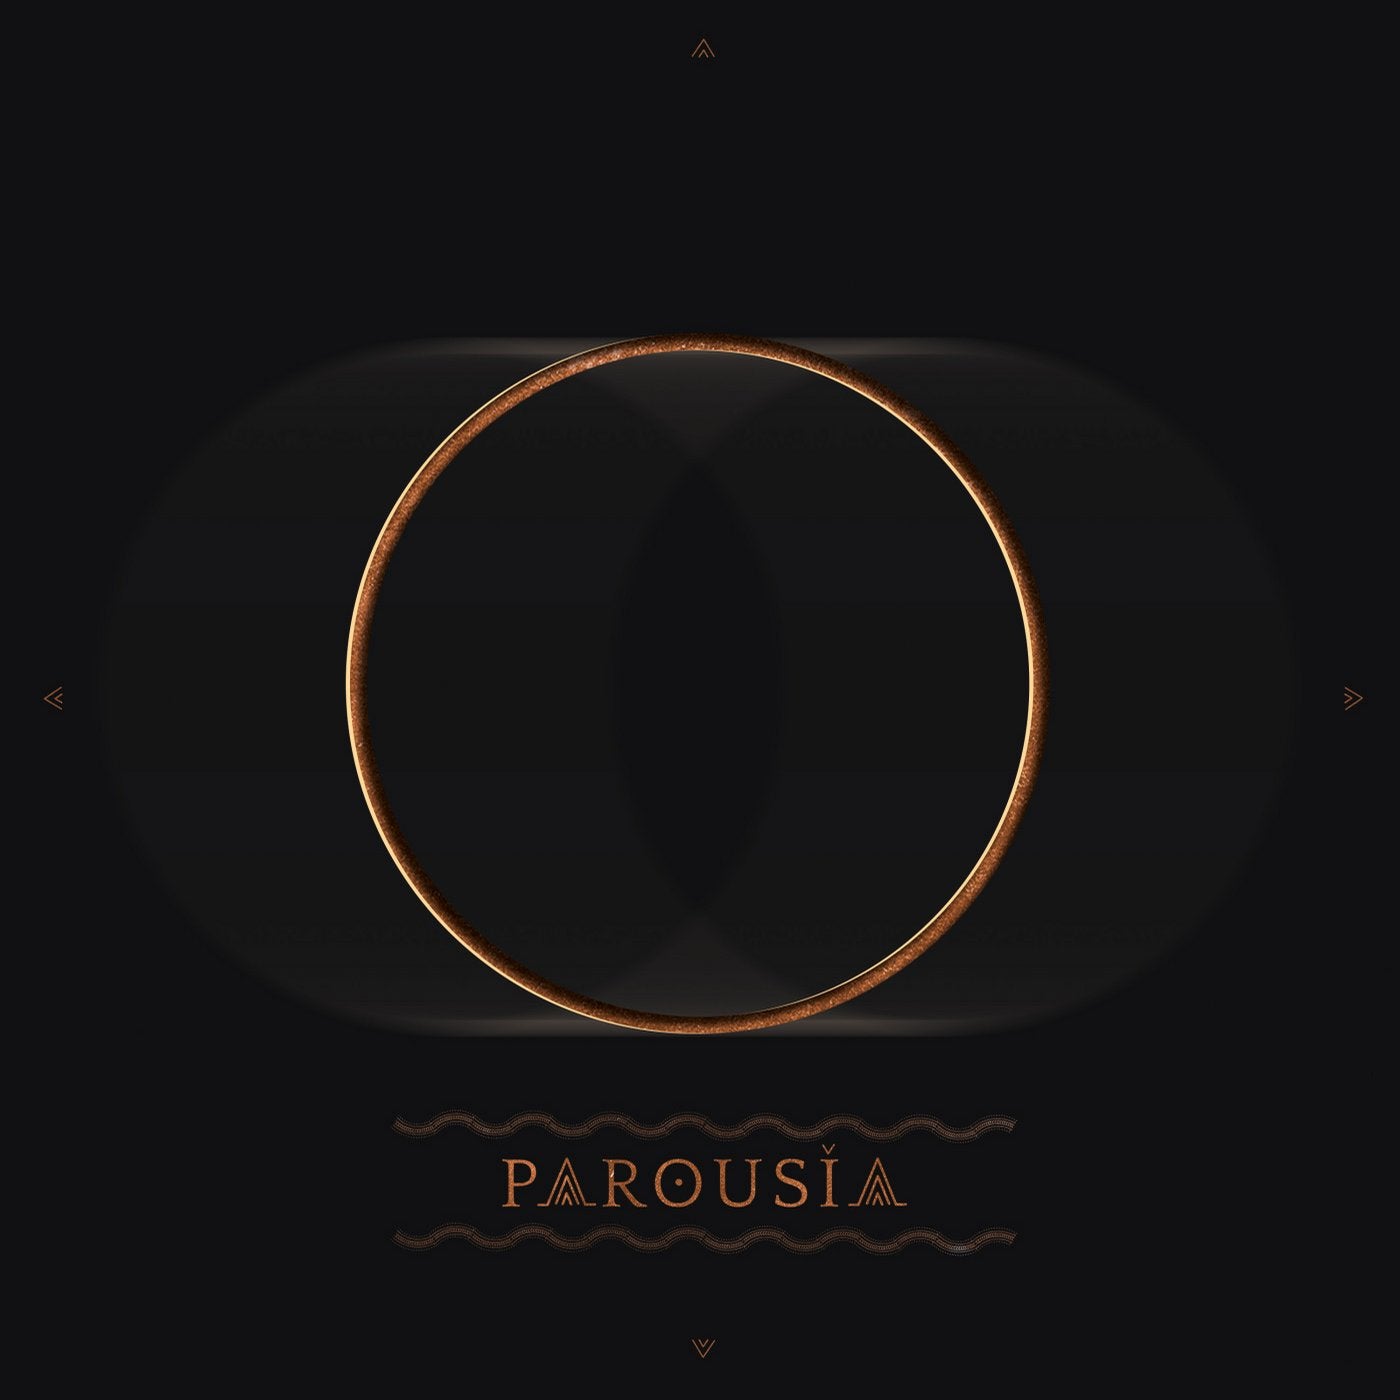 Parousia